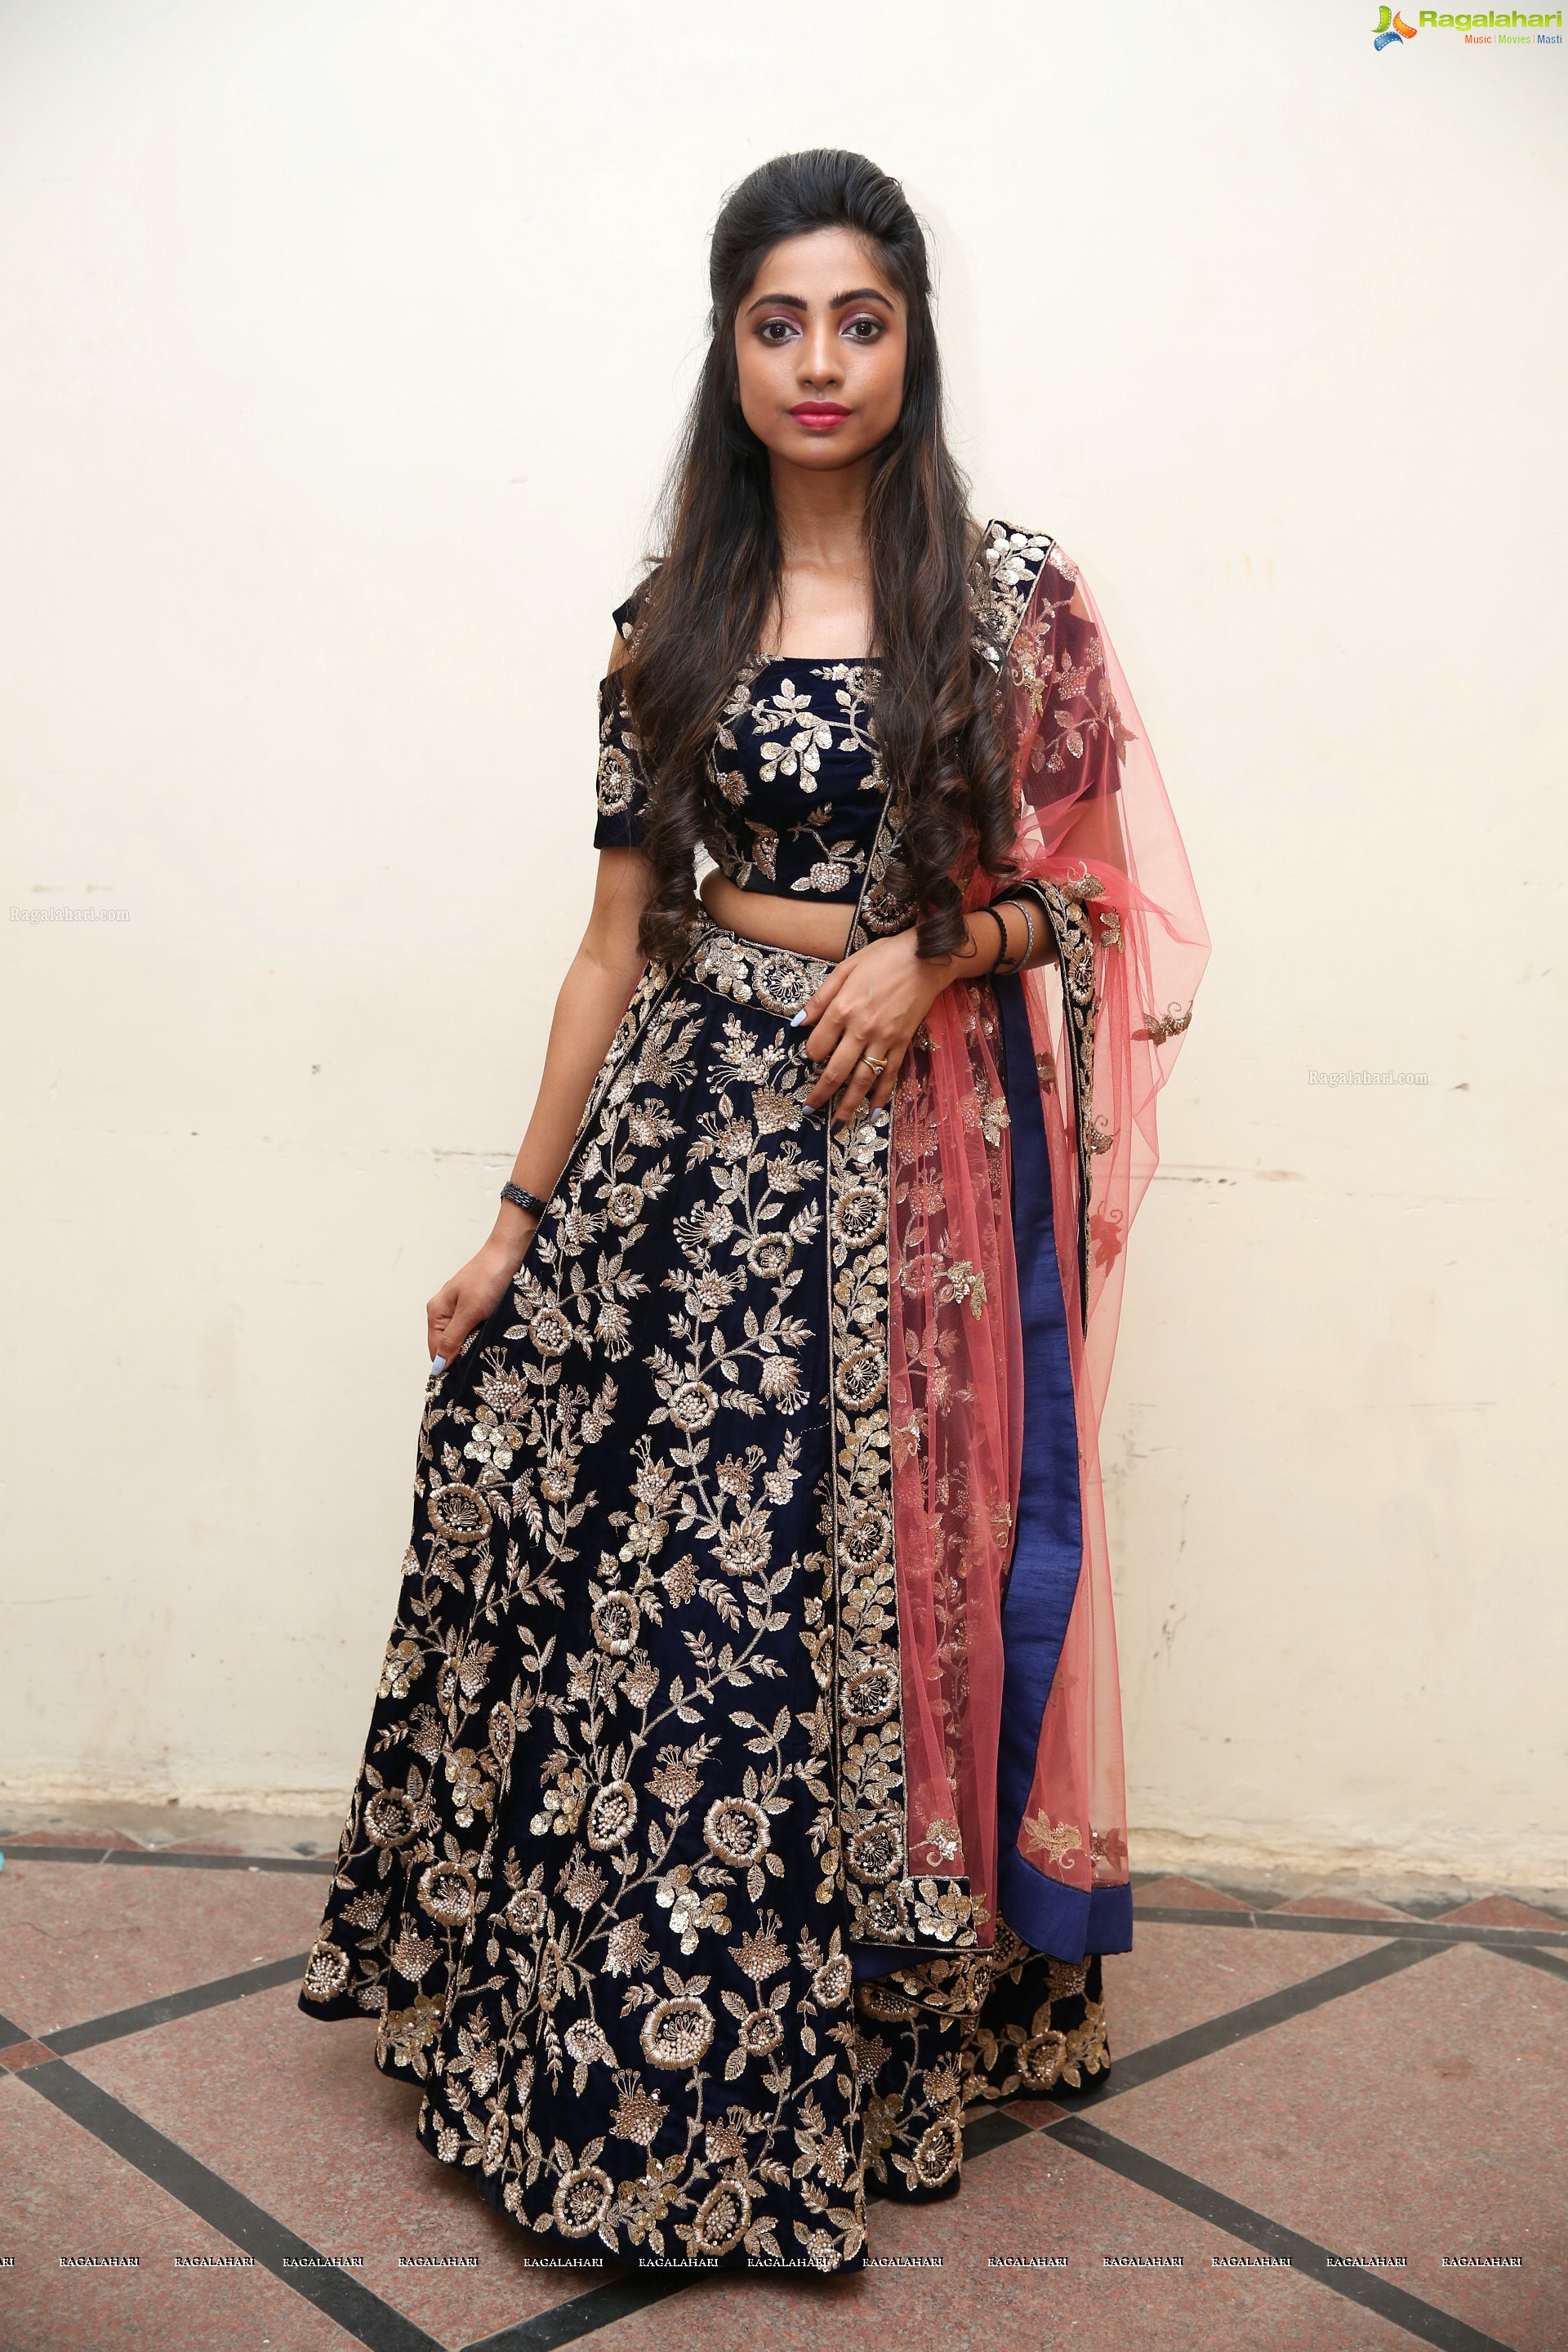 Bindhu CH @ India Glam Fashion Week Hyderabad - HD Gallery